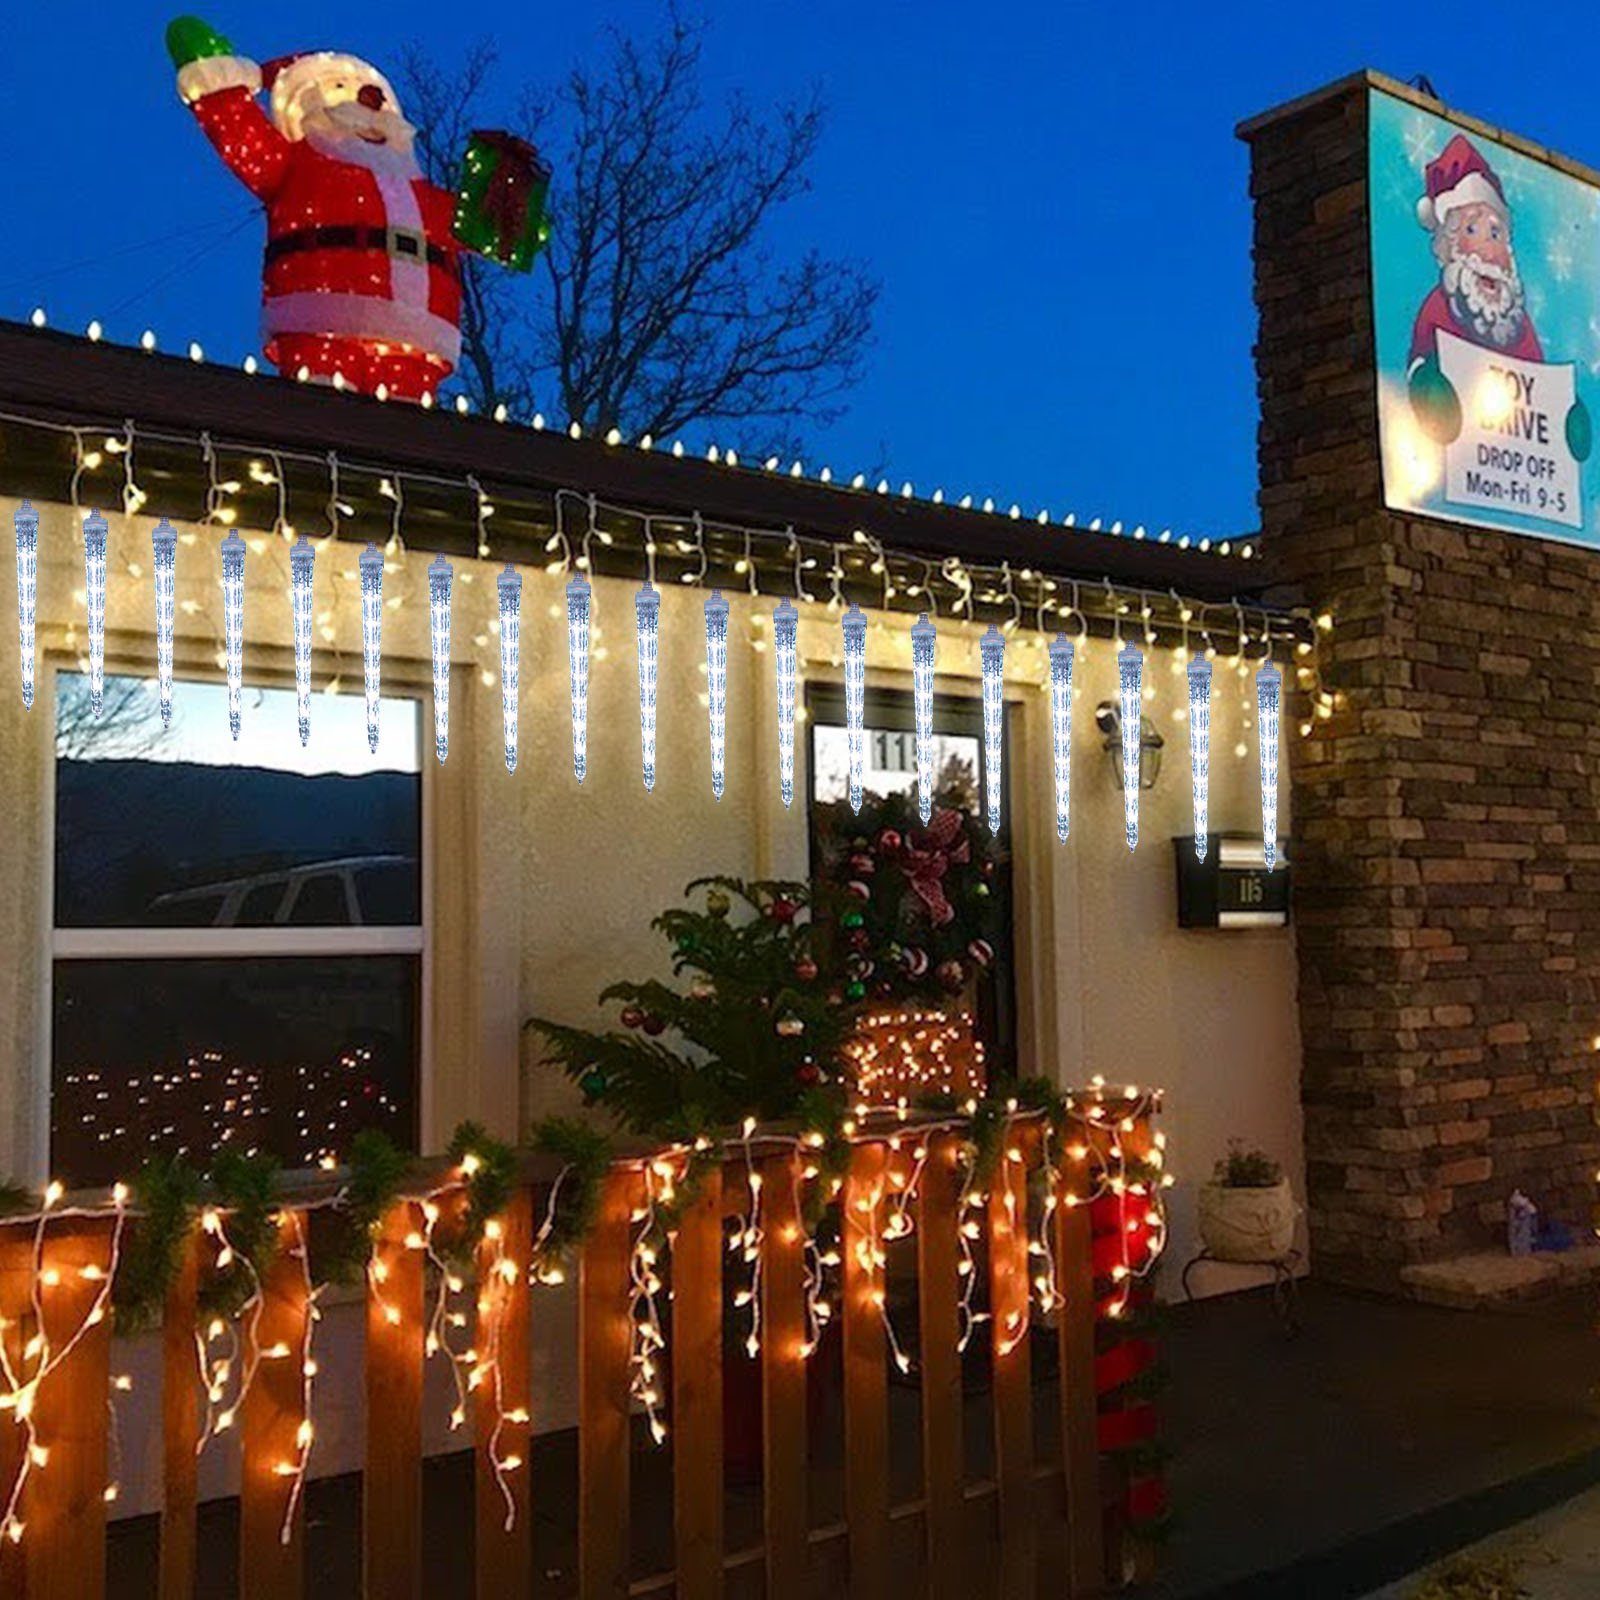 Rosnek LED-Lichterkette 7V, Lichter; wasserdicht, Weihnachten 8 Eiszapfen Eiszapfen 2.8M, 96-flammig, Bäume, mit Traufe anschliessbar, LED für